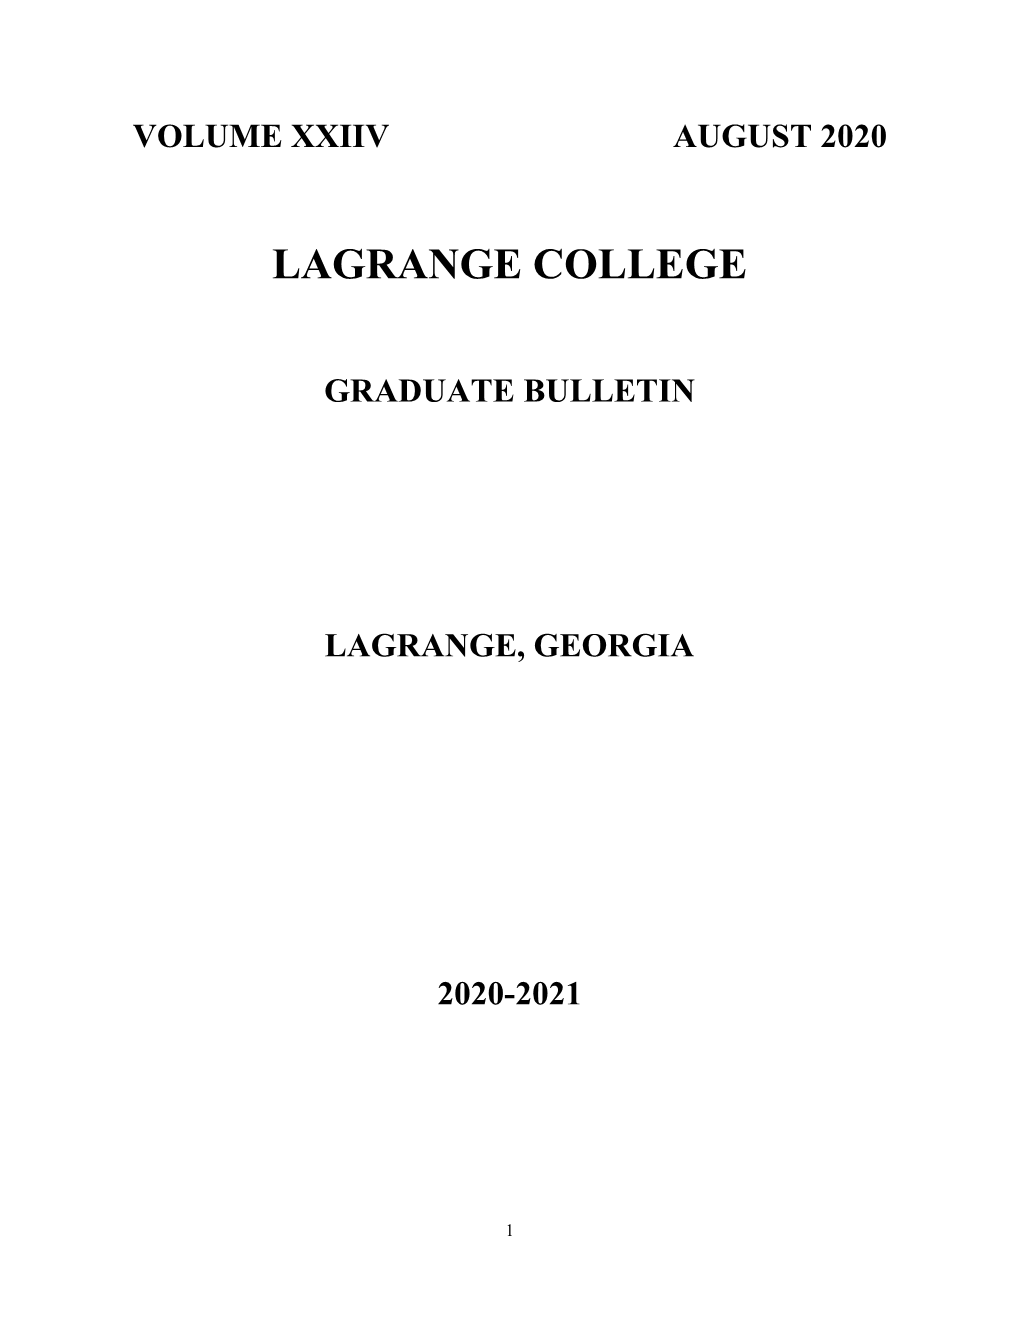 2020-2021 Lagrange College Graduate Bulletin